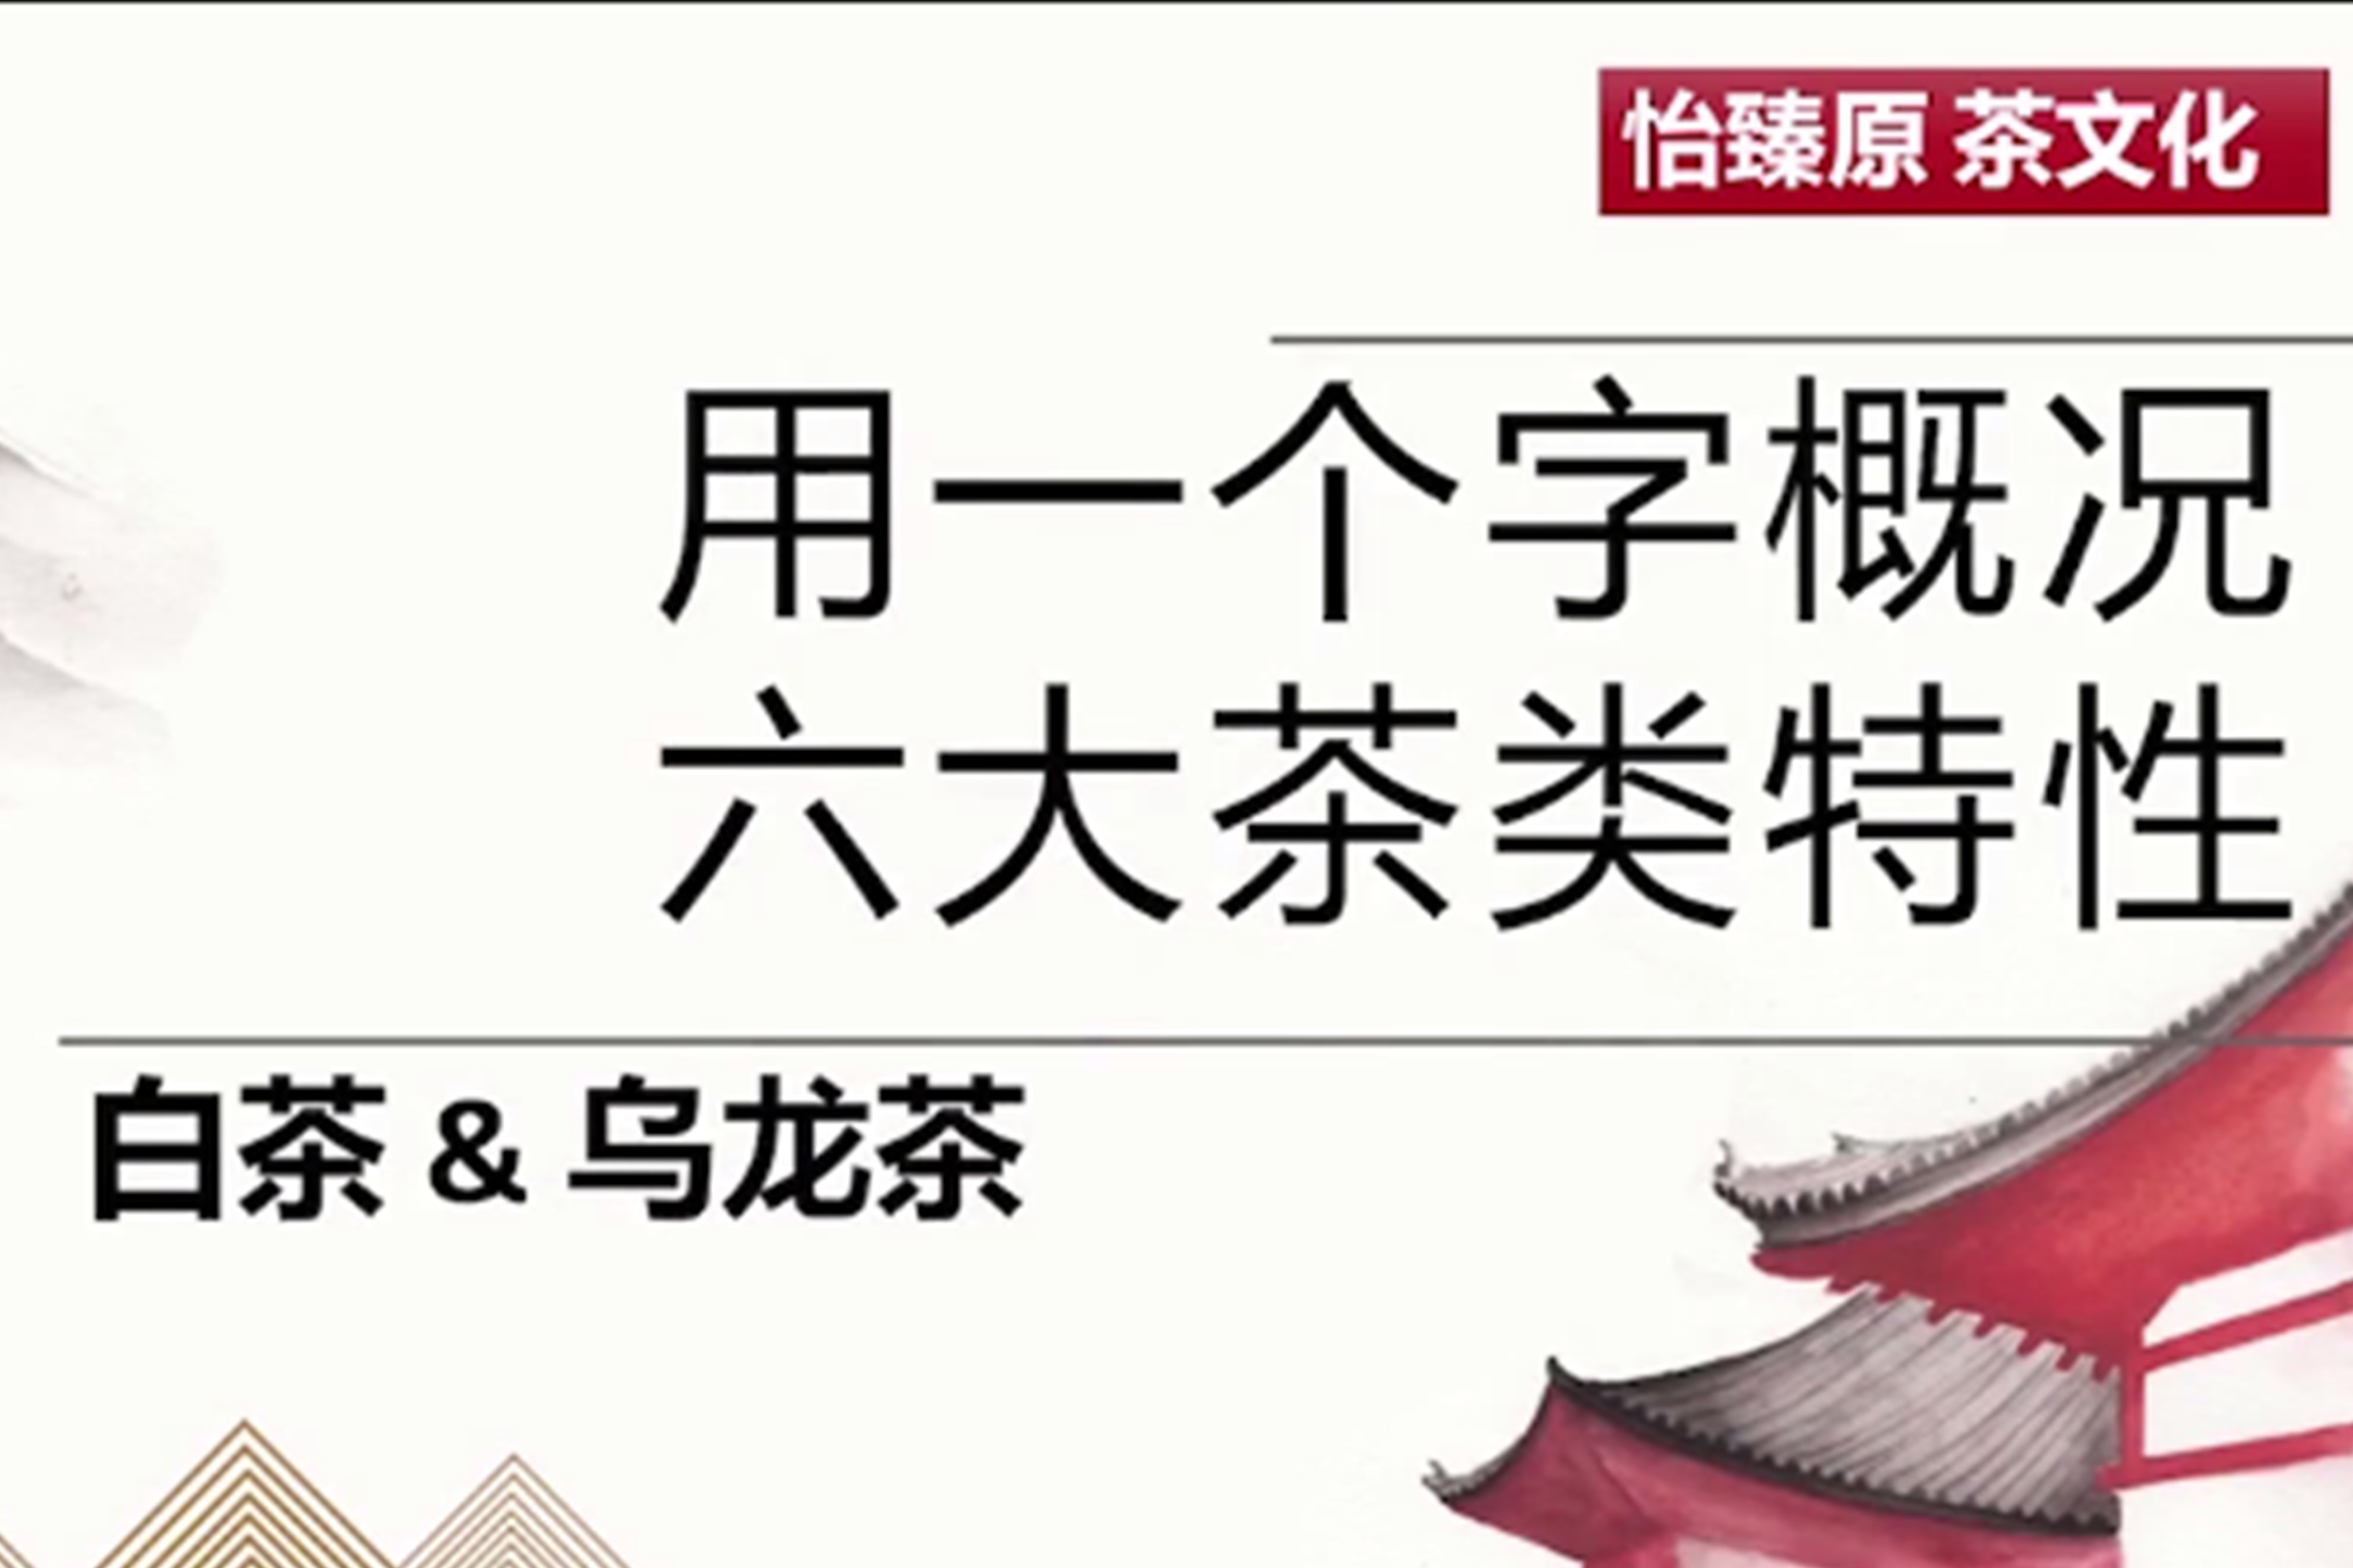 朋友们一起喝茶-蓝牛仔影像-中国原创广告影像素材